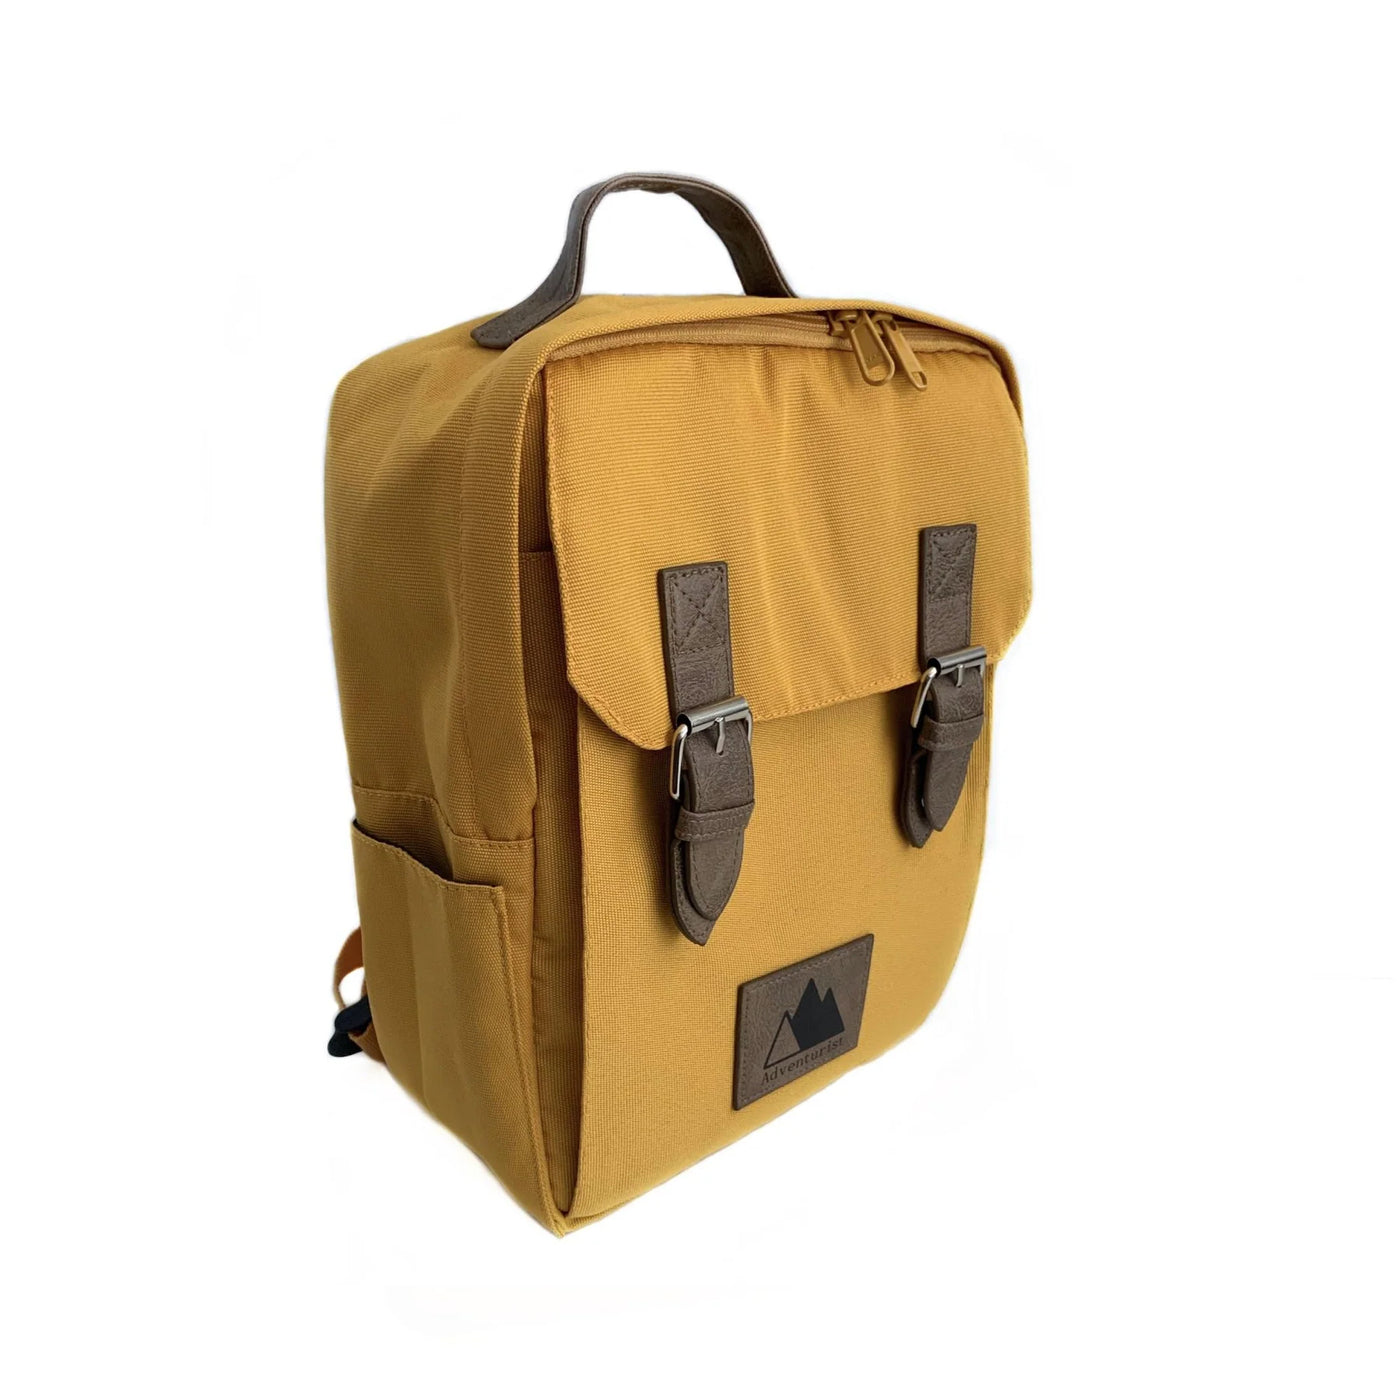 Adventurist Safari Backpack - Amber